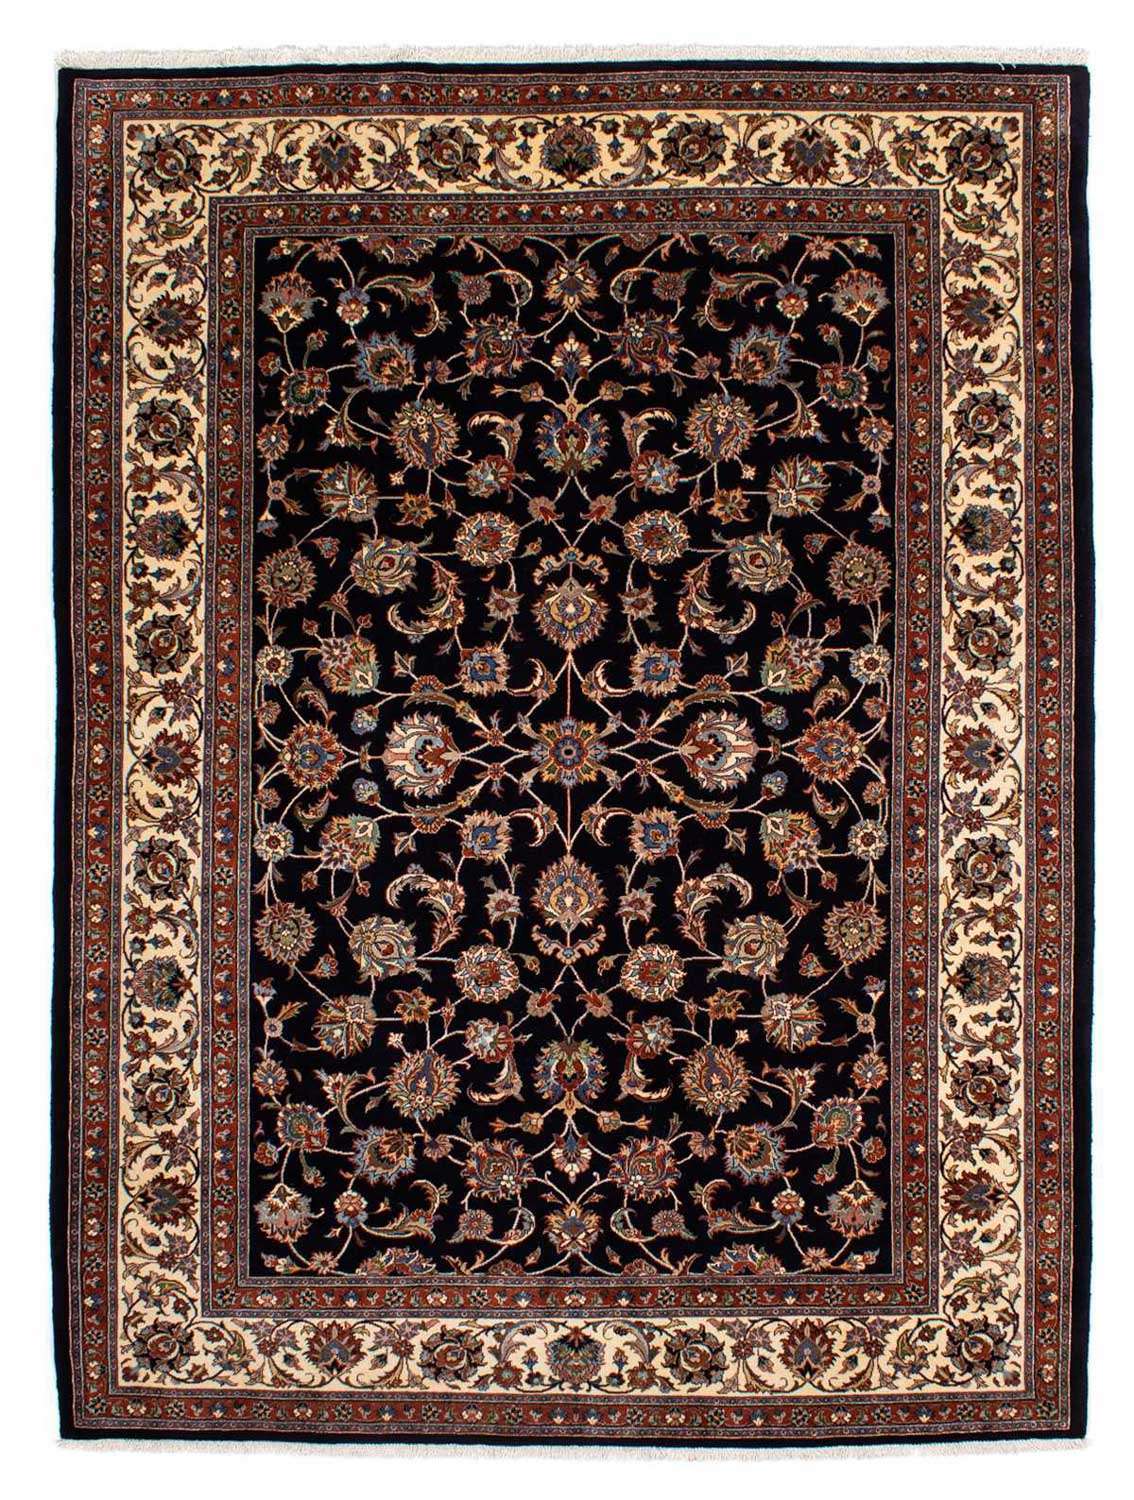 Persisk tæppe - Classic - 286 x 204 cm - mørkeblå